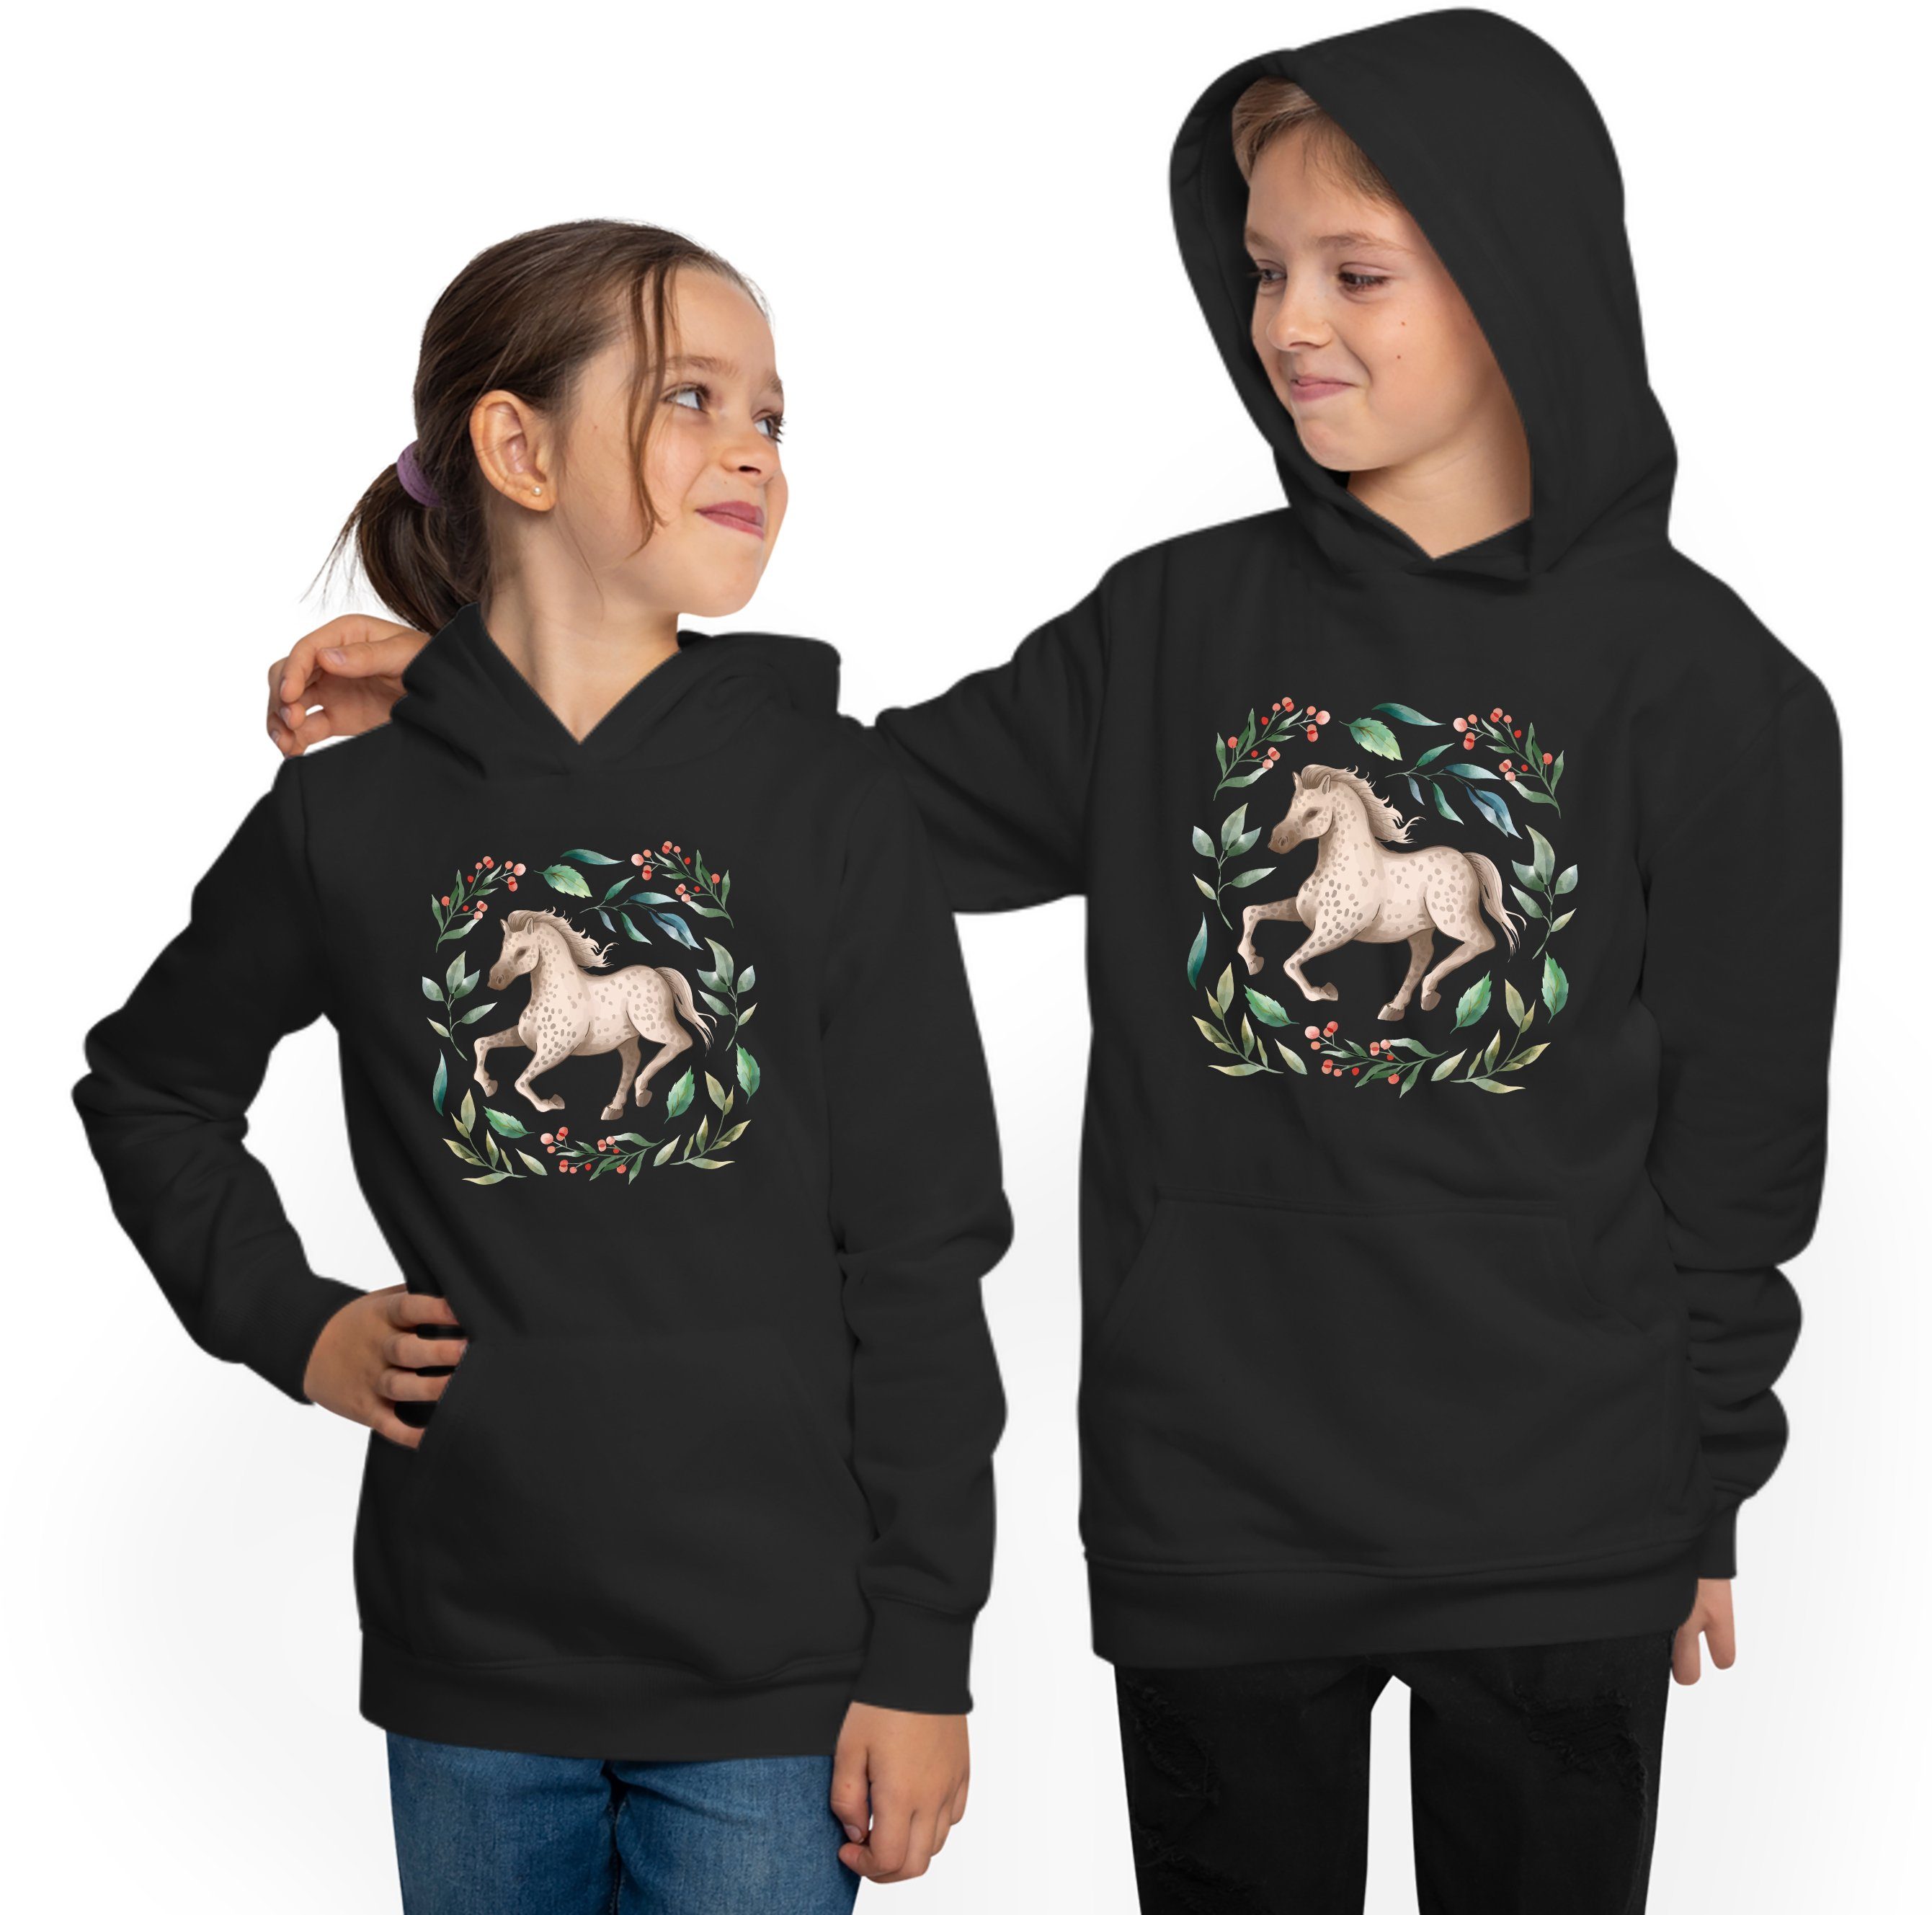 MyDesign24 Hoodie Kinder Kapuzen i161 im Laufendes Pferd Kapuzensweater mit Aufdruck, Sweatshirt Blumenkranz